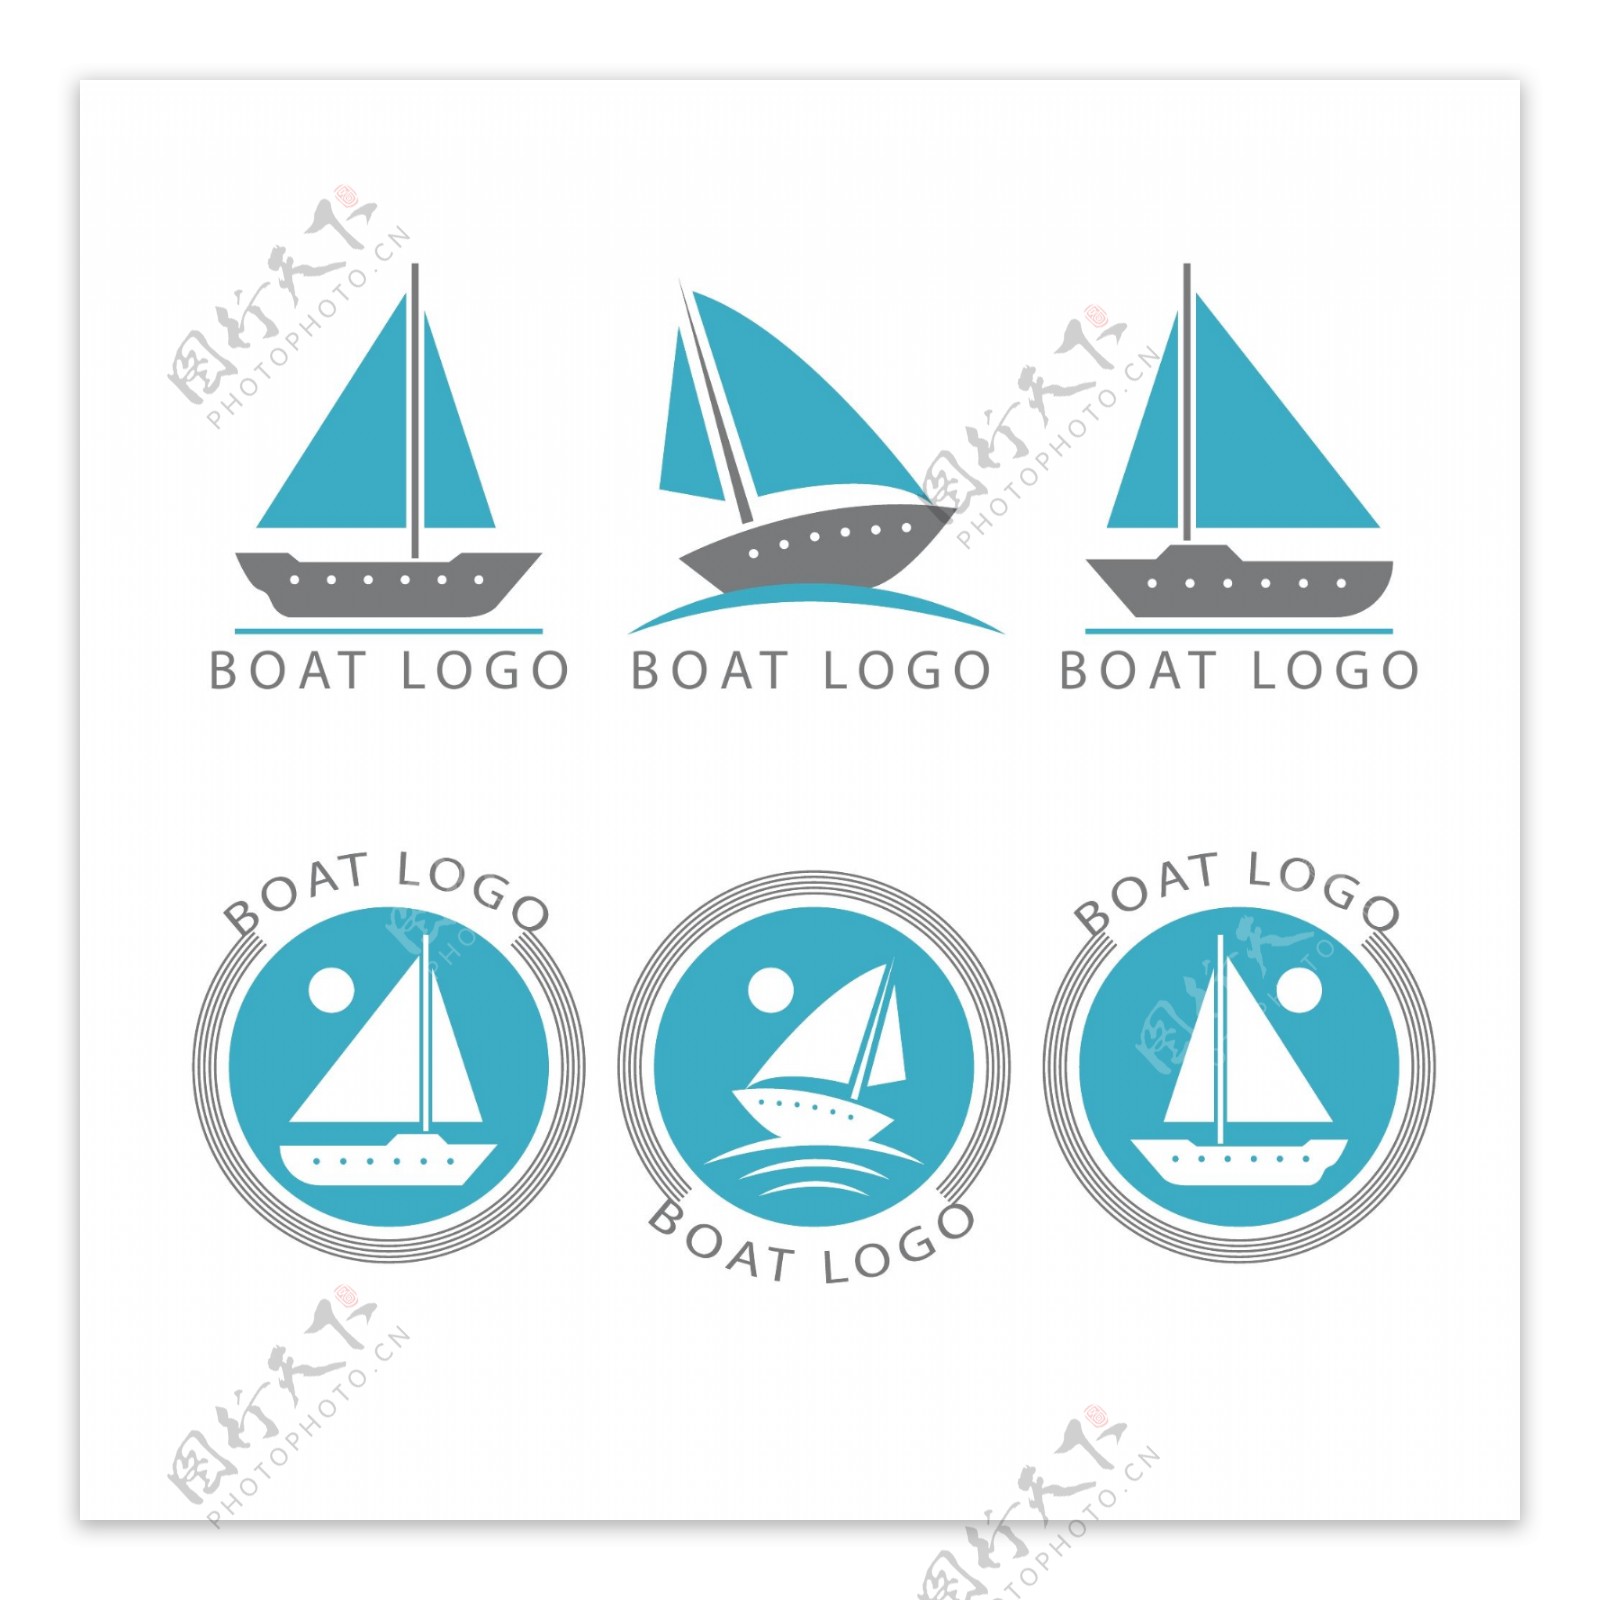 多款帆船印章符号矢量素材